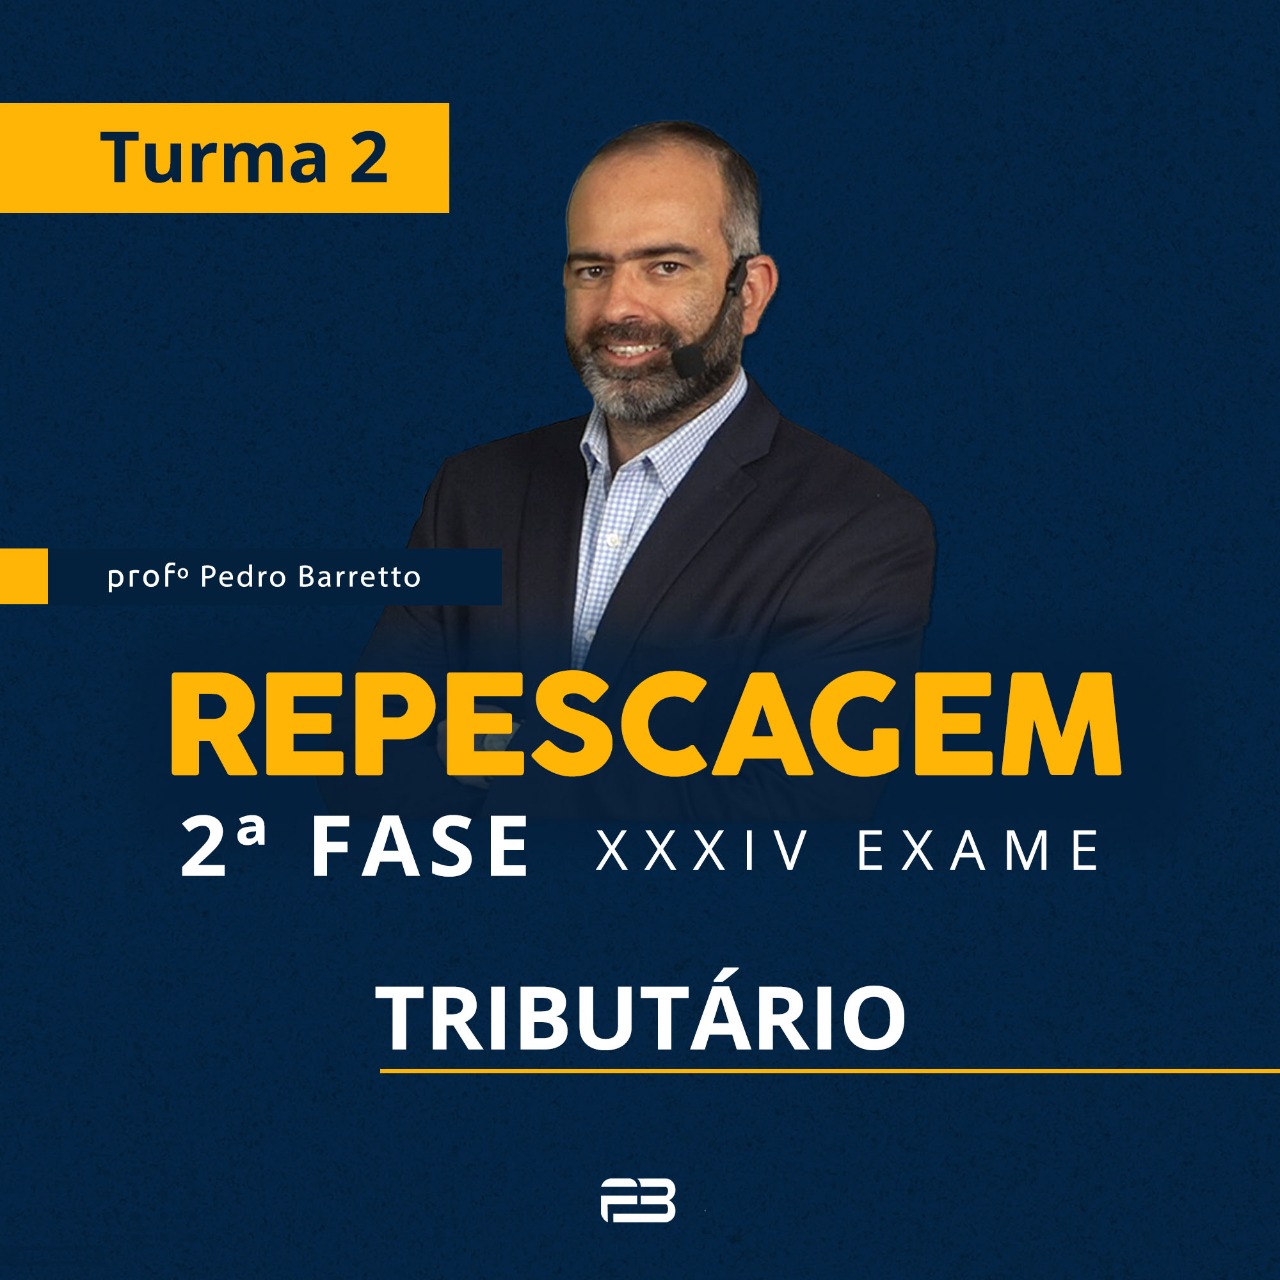 2ª FASE REPESCAGEM TRIBUTÁRIO TURMA 2 - XXXIV EXAME ONLINE